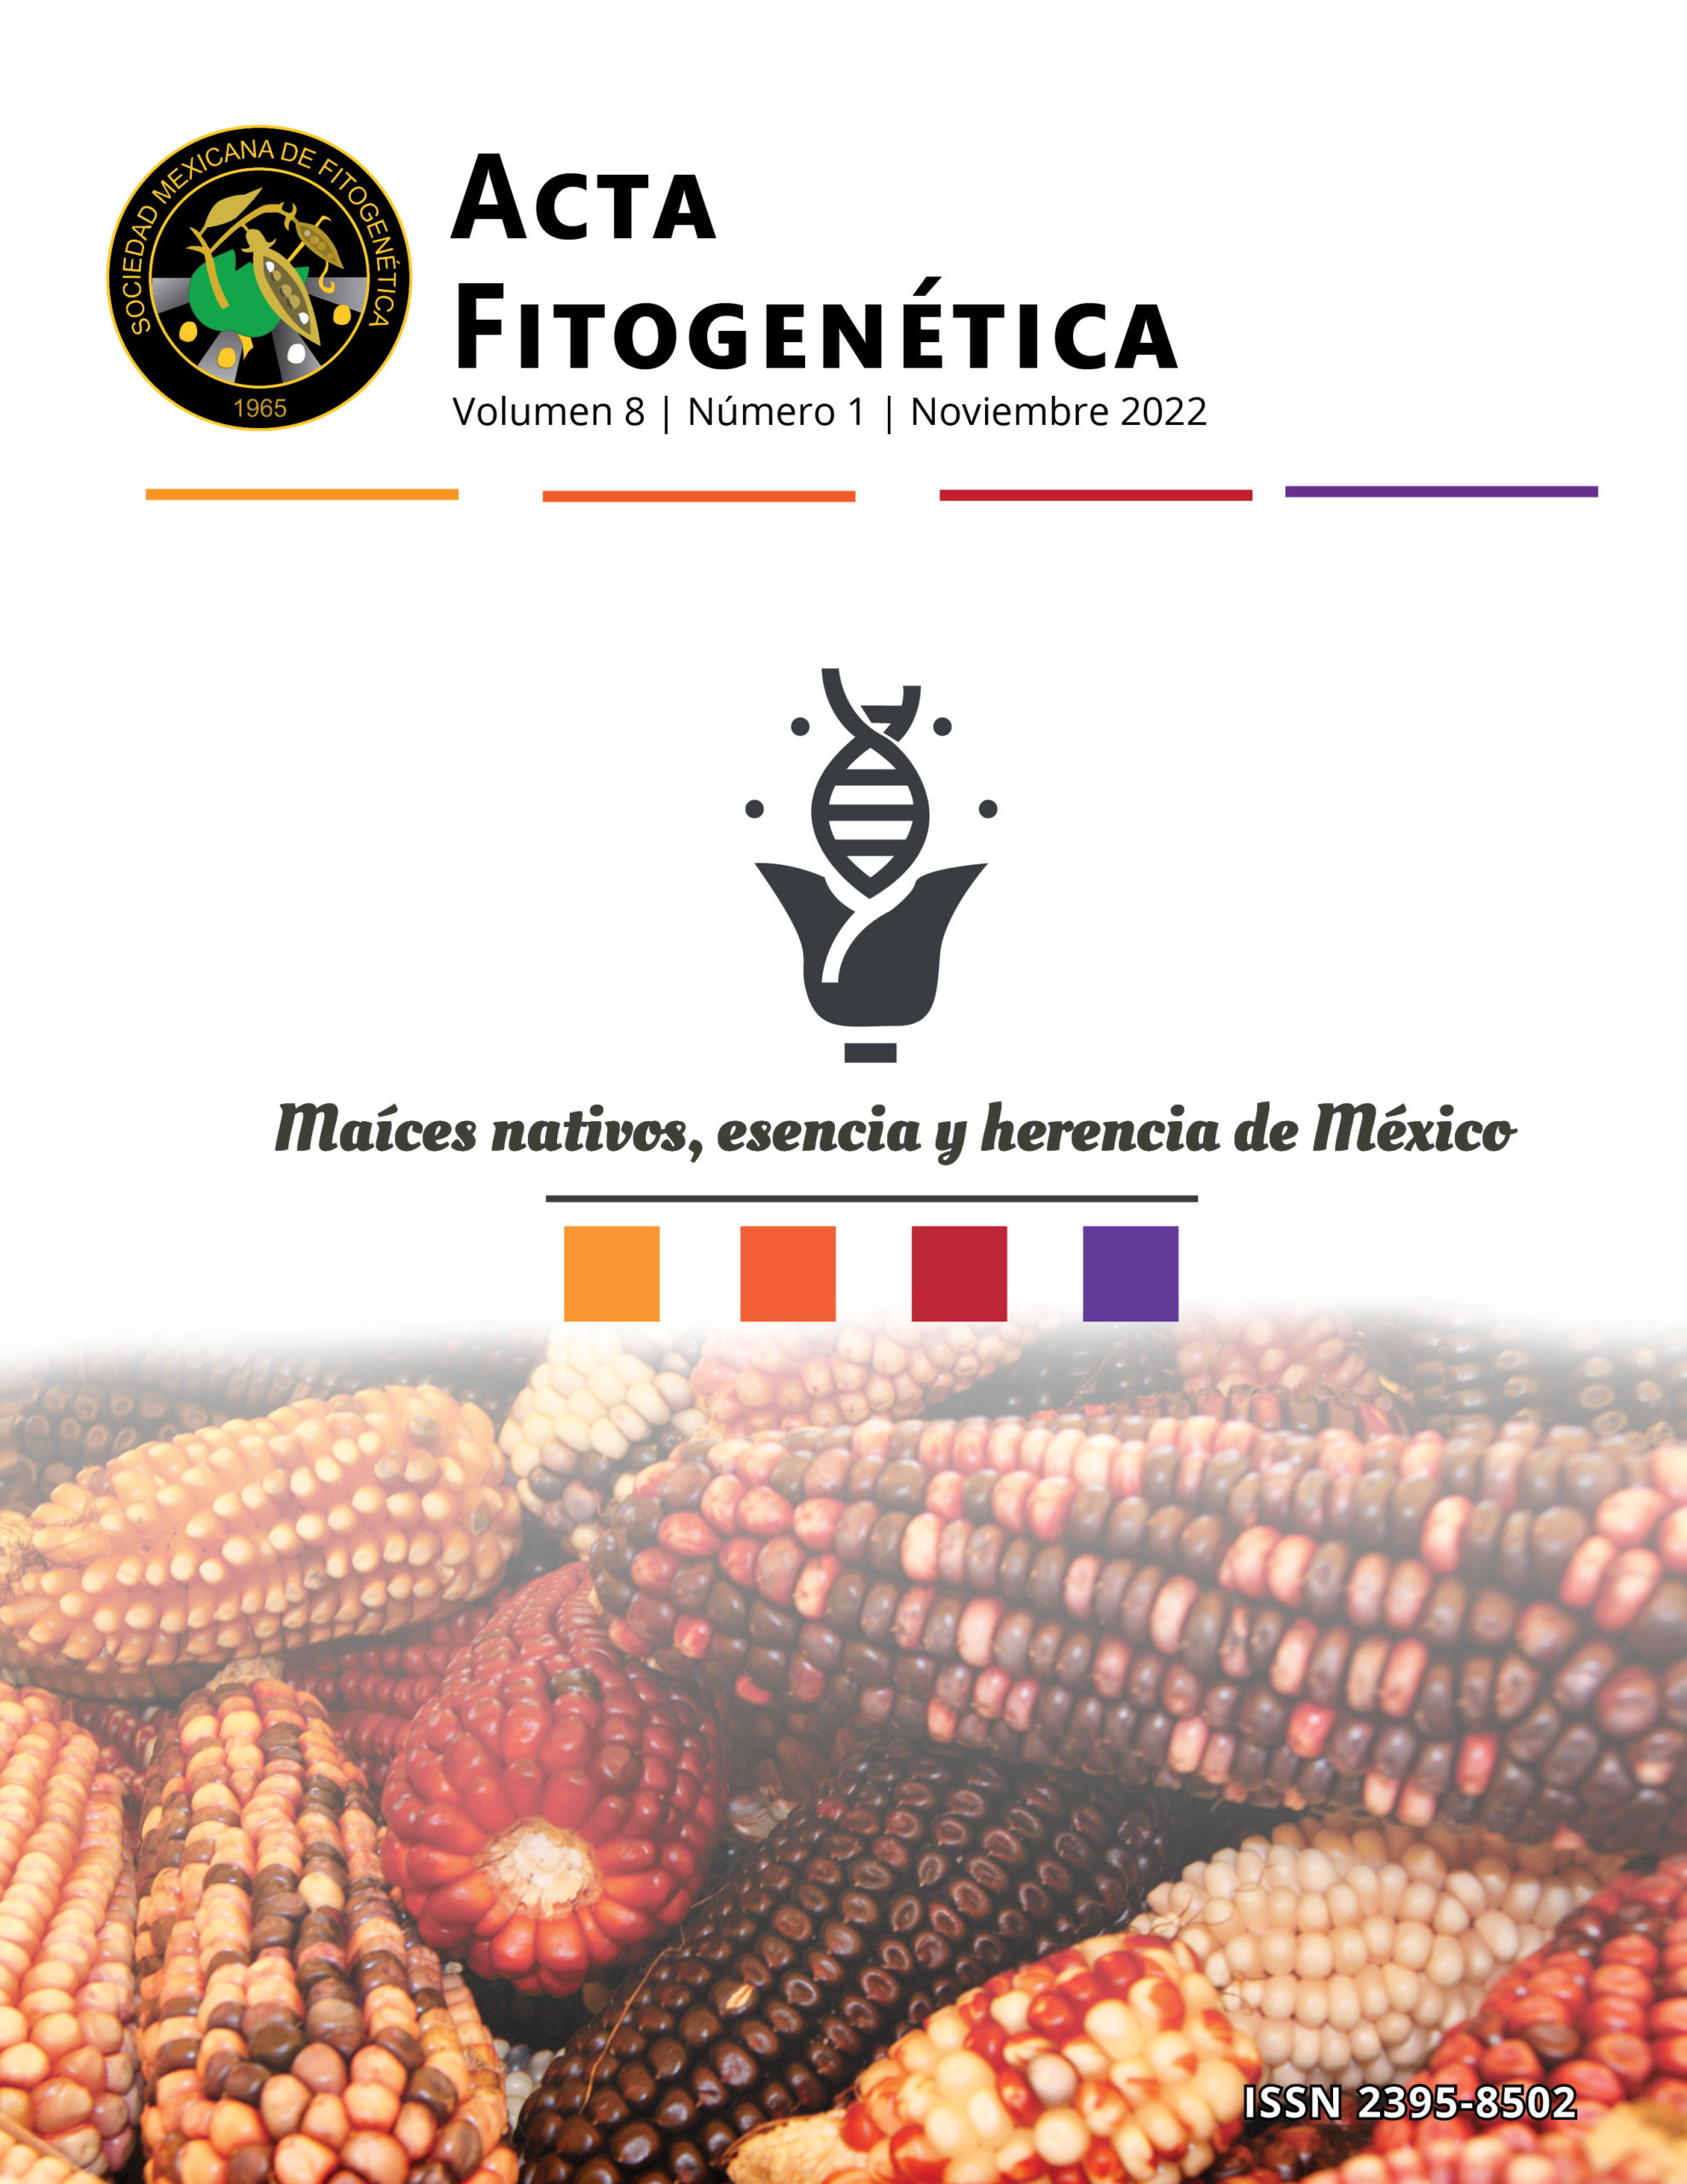  Acta Fitogenetica Volúmen 8, Número 1 - Noviembre del 2022, de la Reunion de Maices  Nativos que se llevo acabo en Ocosingo, Chiapas